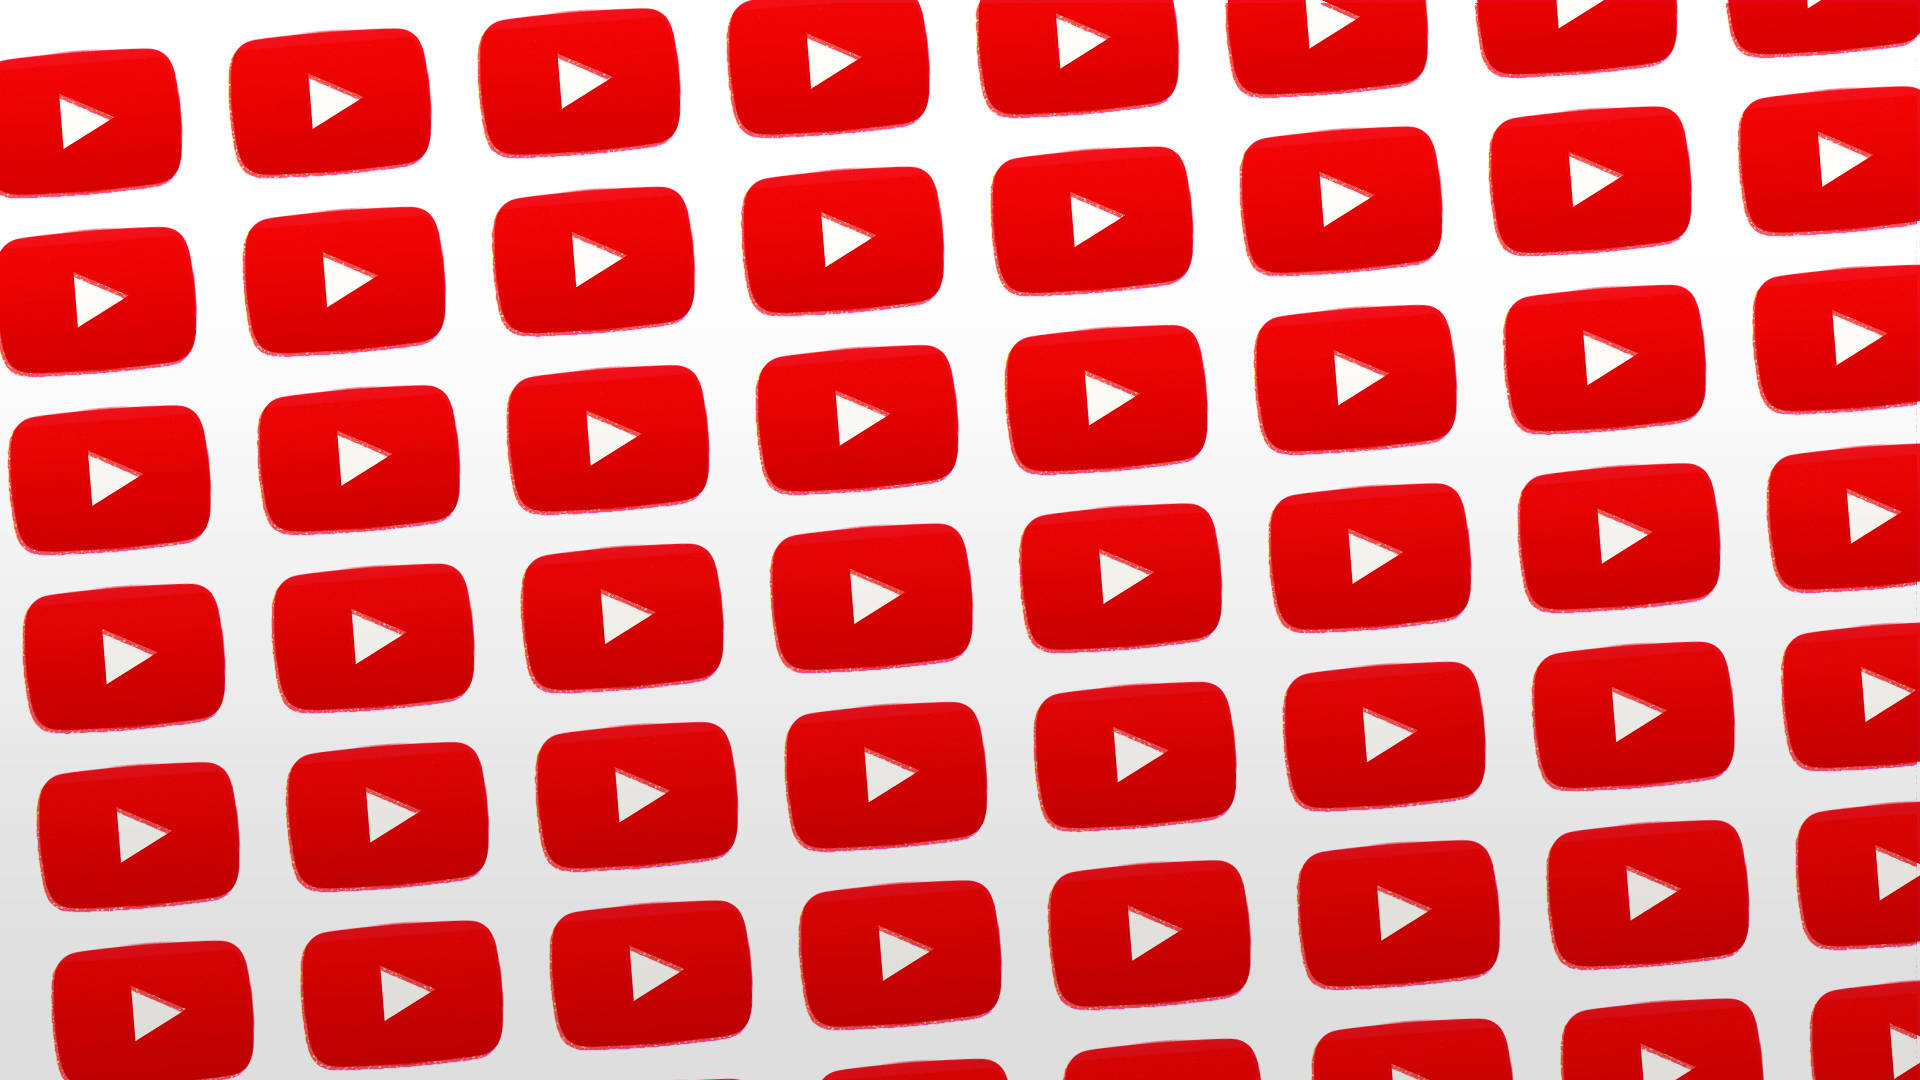 Seriede Botones De Reproducción Del Logotipo De Youtube. Fondo de pantalla